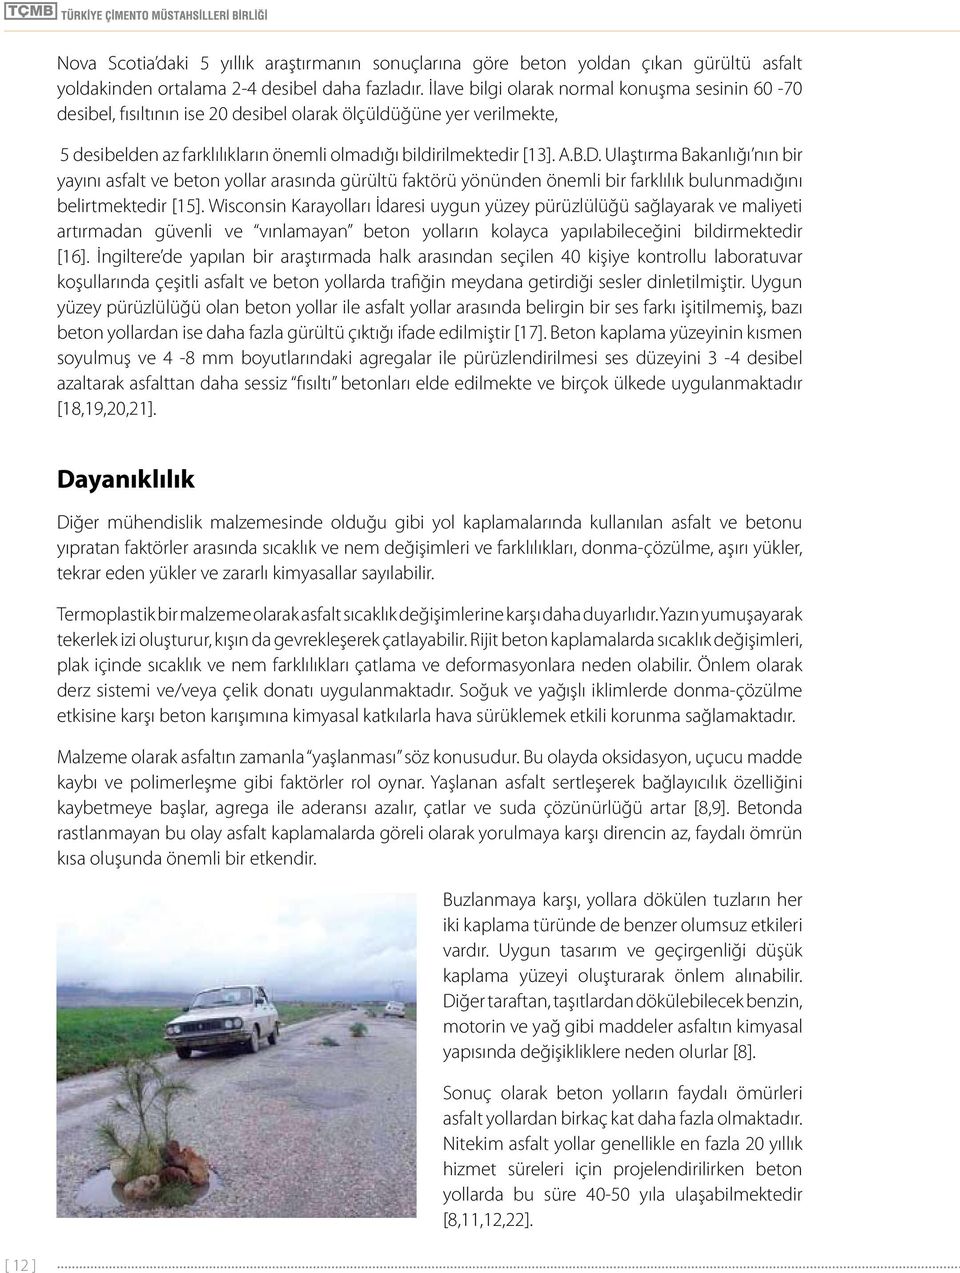 Ulaştırma Bakanlığı nın bir yayını asfalt ve beton yollar arasında gürültü faktörü yönünden önemli bir farklılık bulunmadığını belirtmektedir [15].